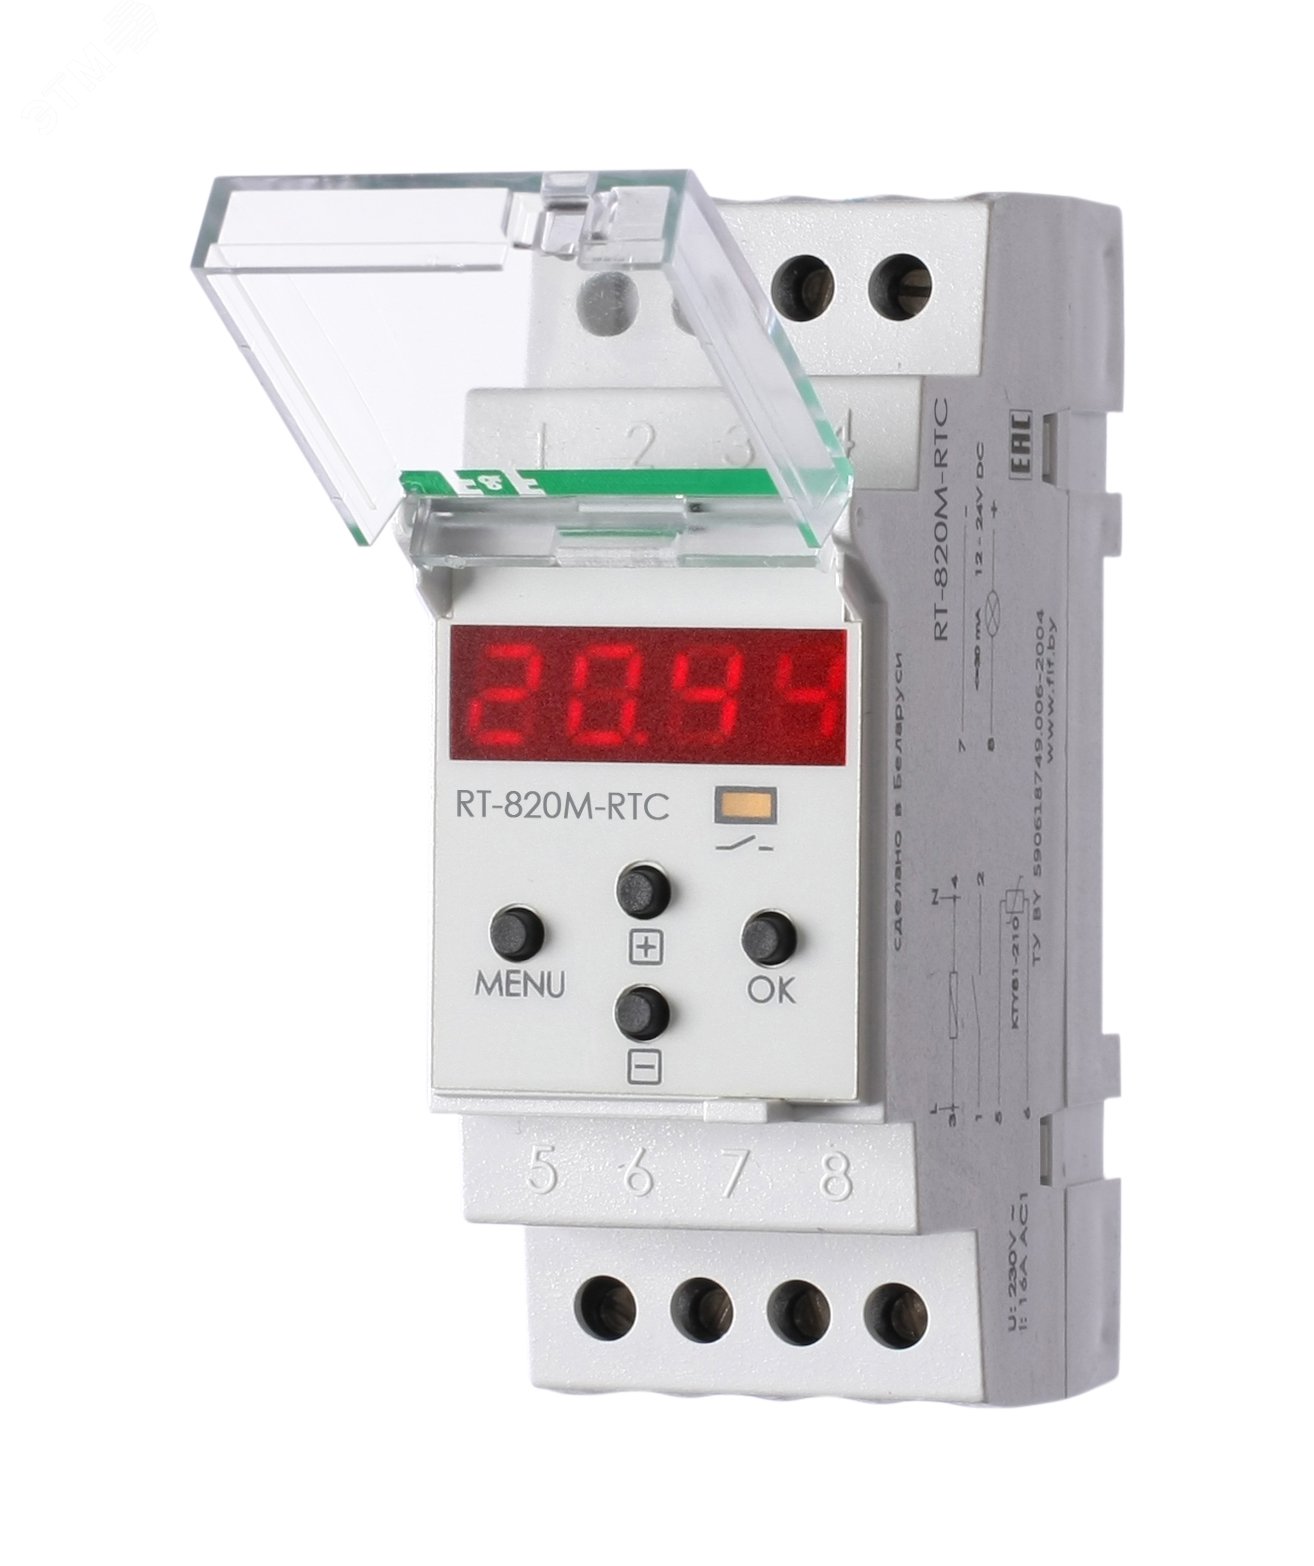 Регулятор температуры RT-820M-RTC EA07.001.020 Евроавтоматика F&F